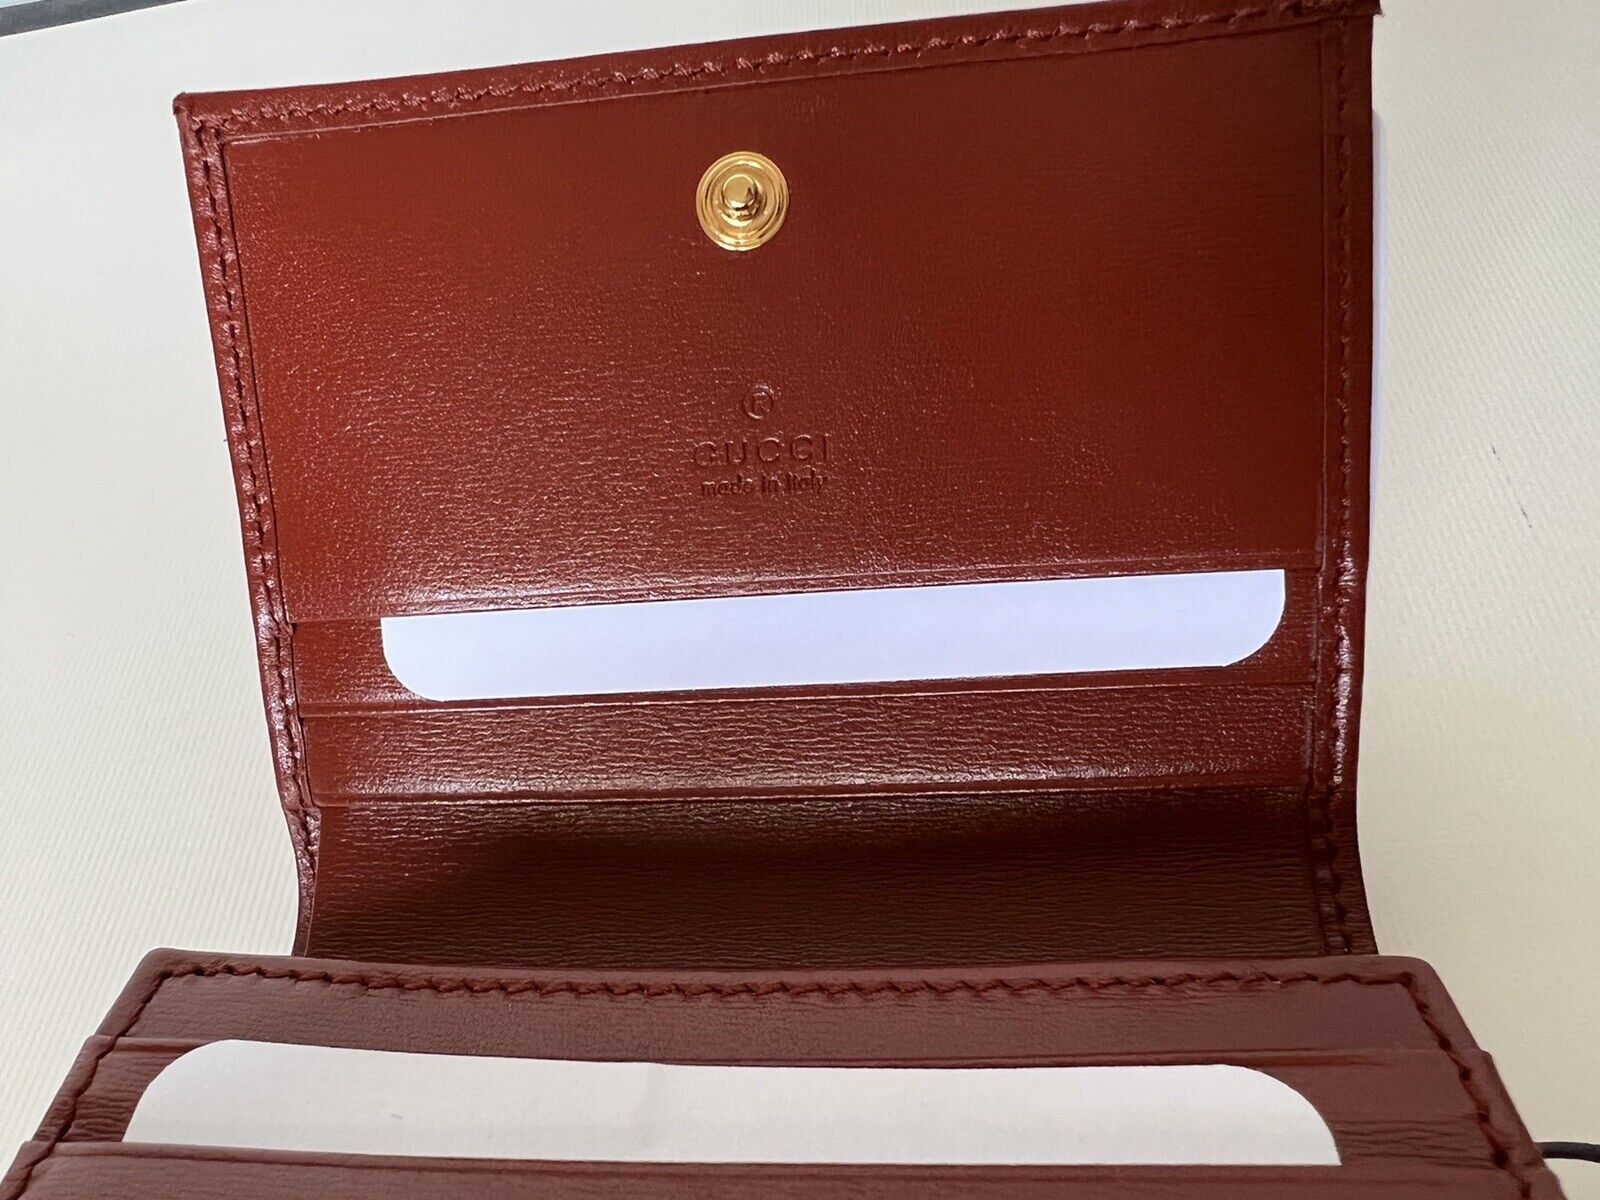 Новый кожаный бумажник Gucci Horsbit 1955 Mini коричнево-красного цвета, сделанный в Италии 621887 